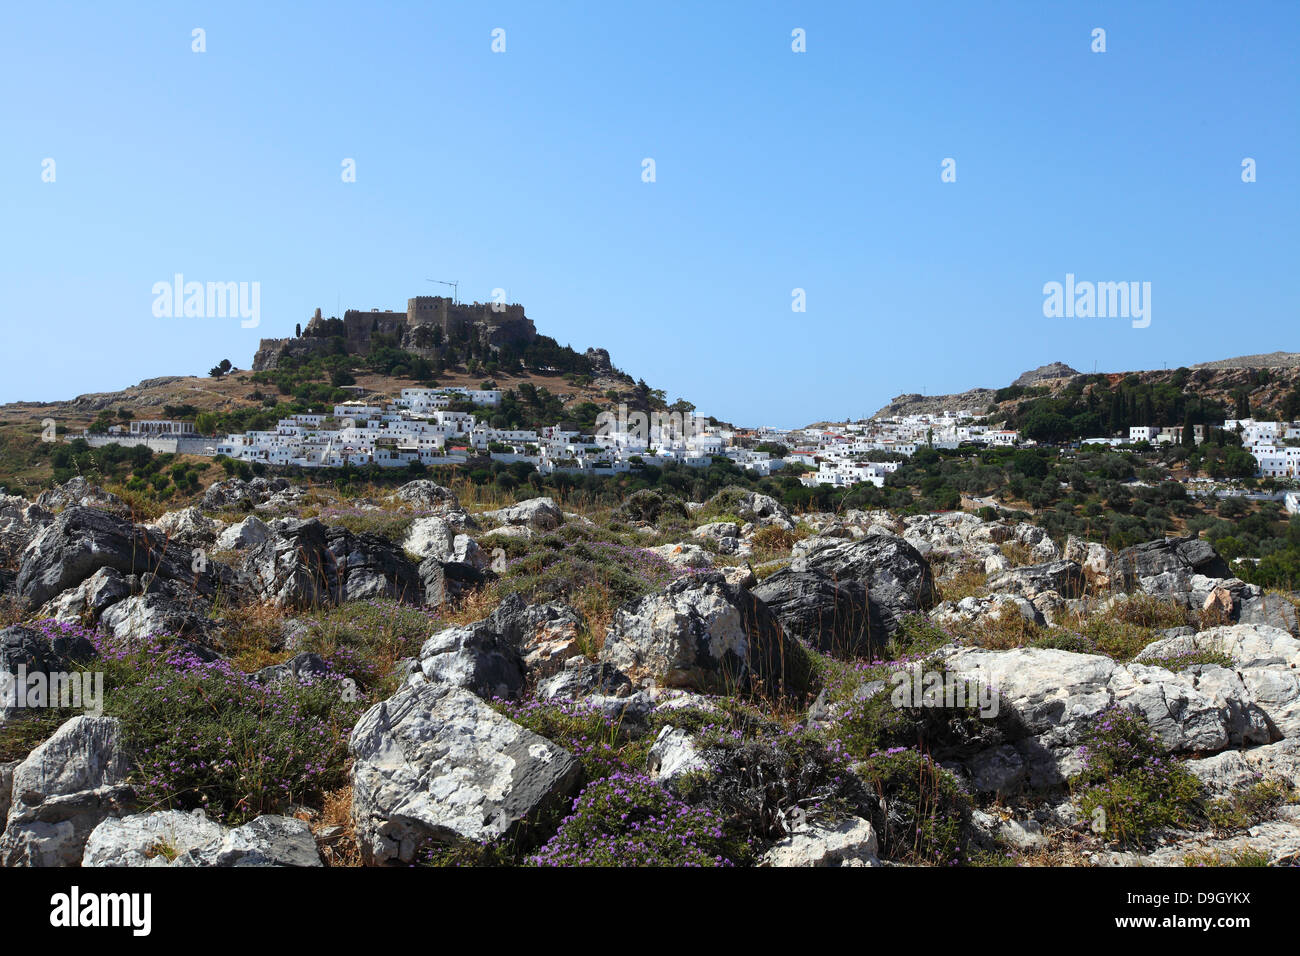 Paysage de l'île de Rhodes avec vue sur le château et la ville de Lindos Banque D'Images